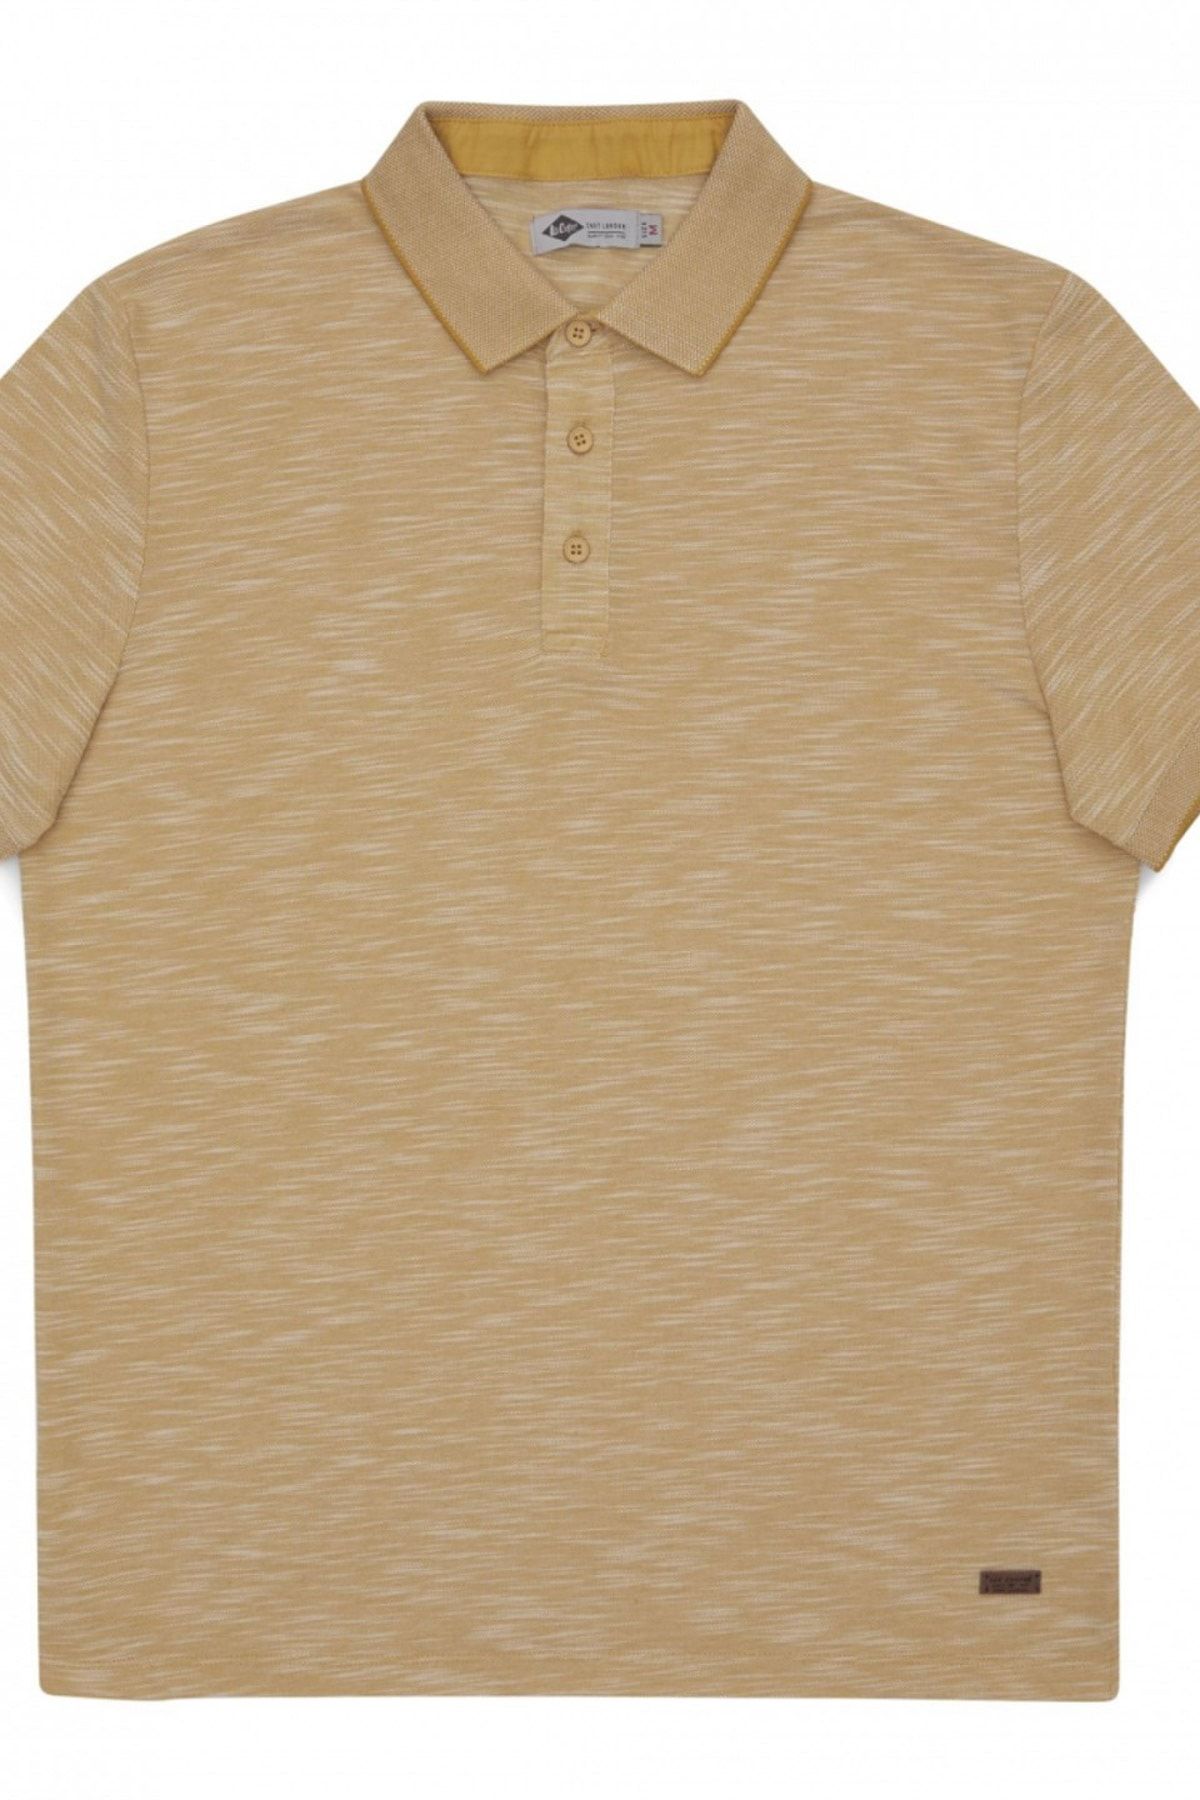 Lee Cooper Erkek Jake Polo Yaka T-Shirt Pastel Sari 212 LCM 242049